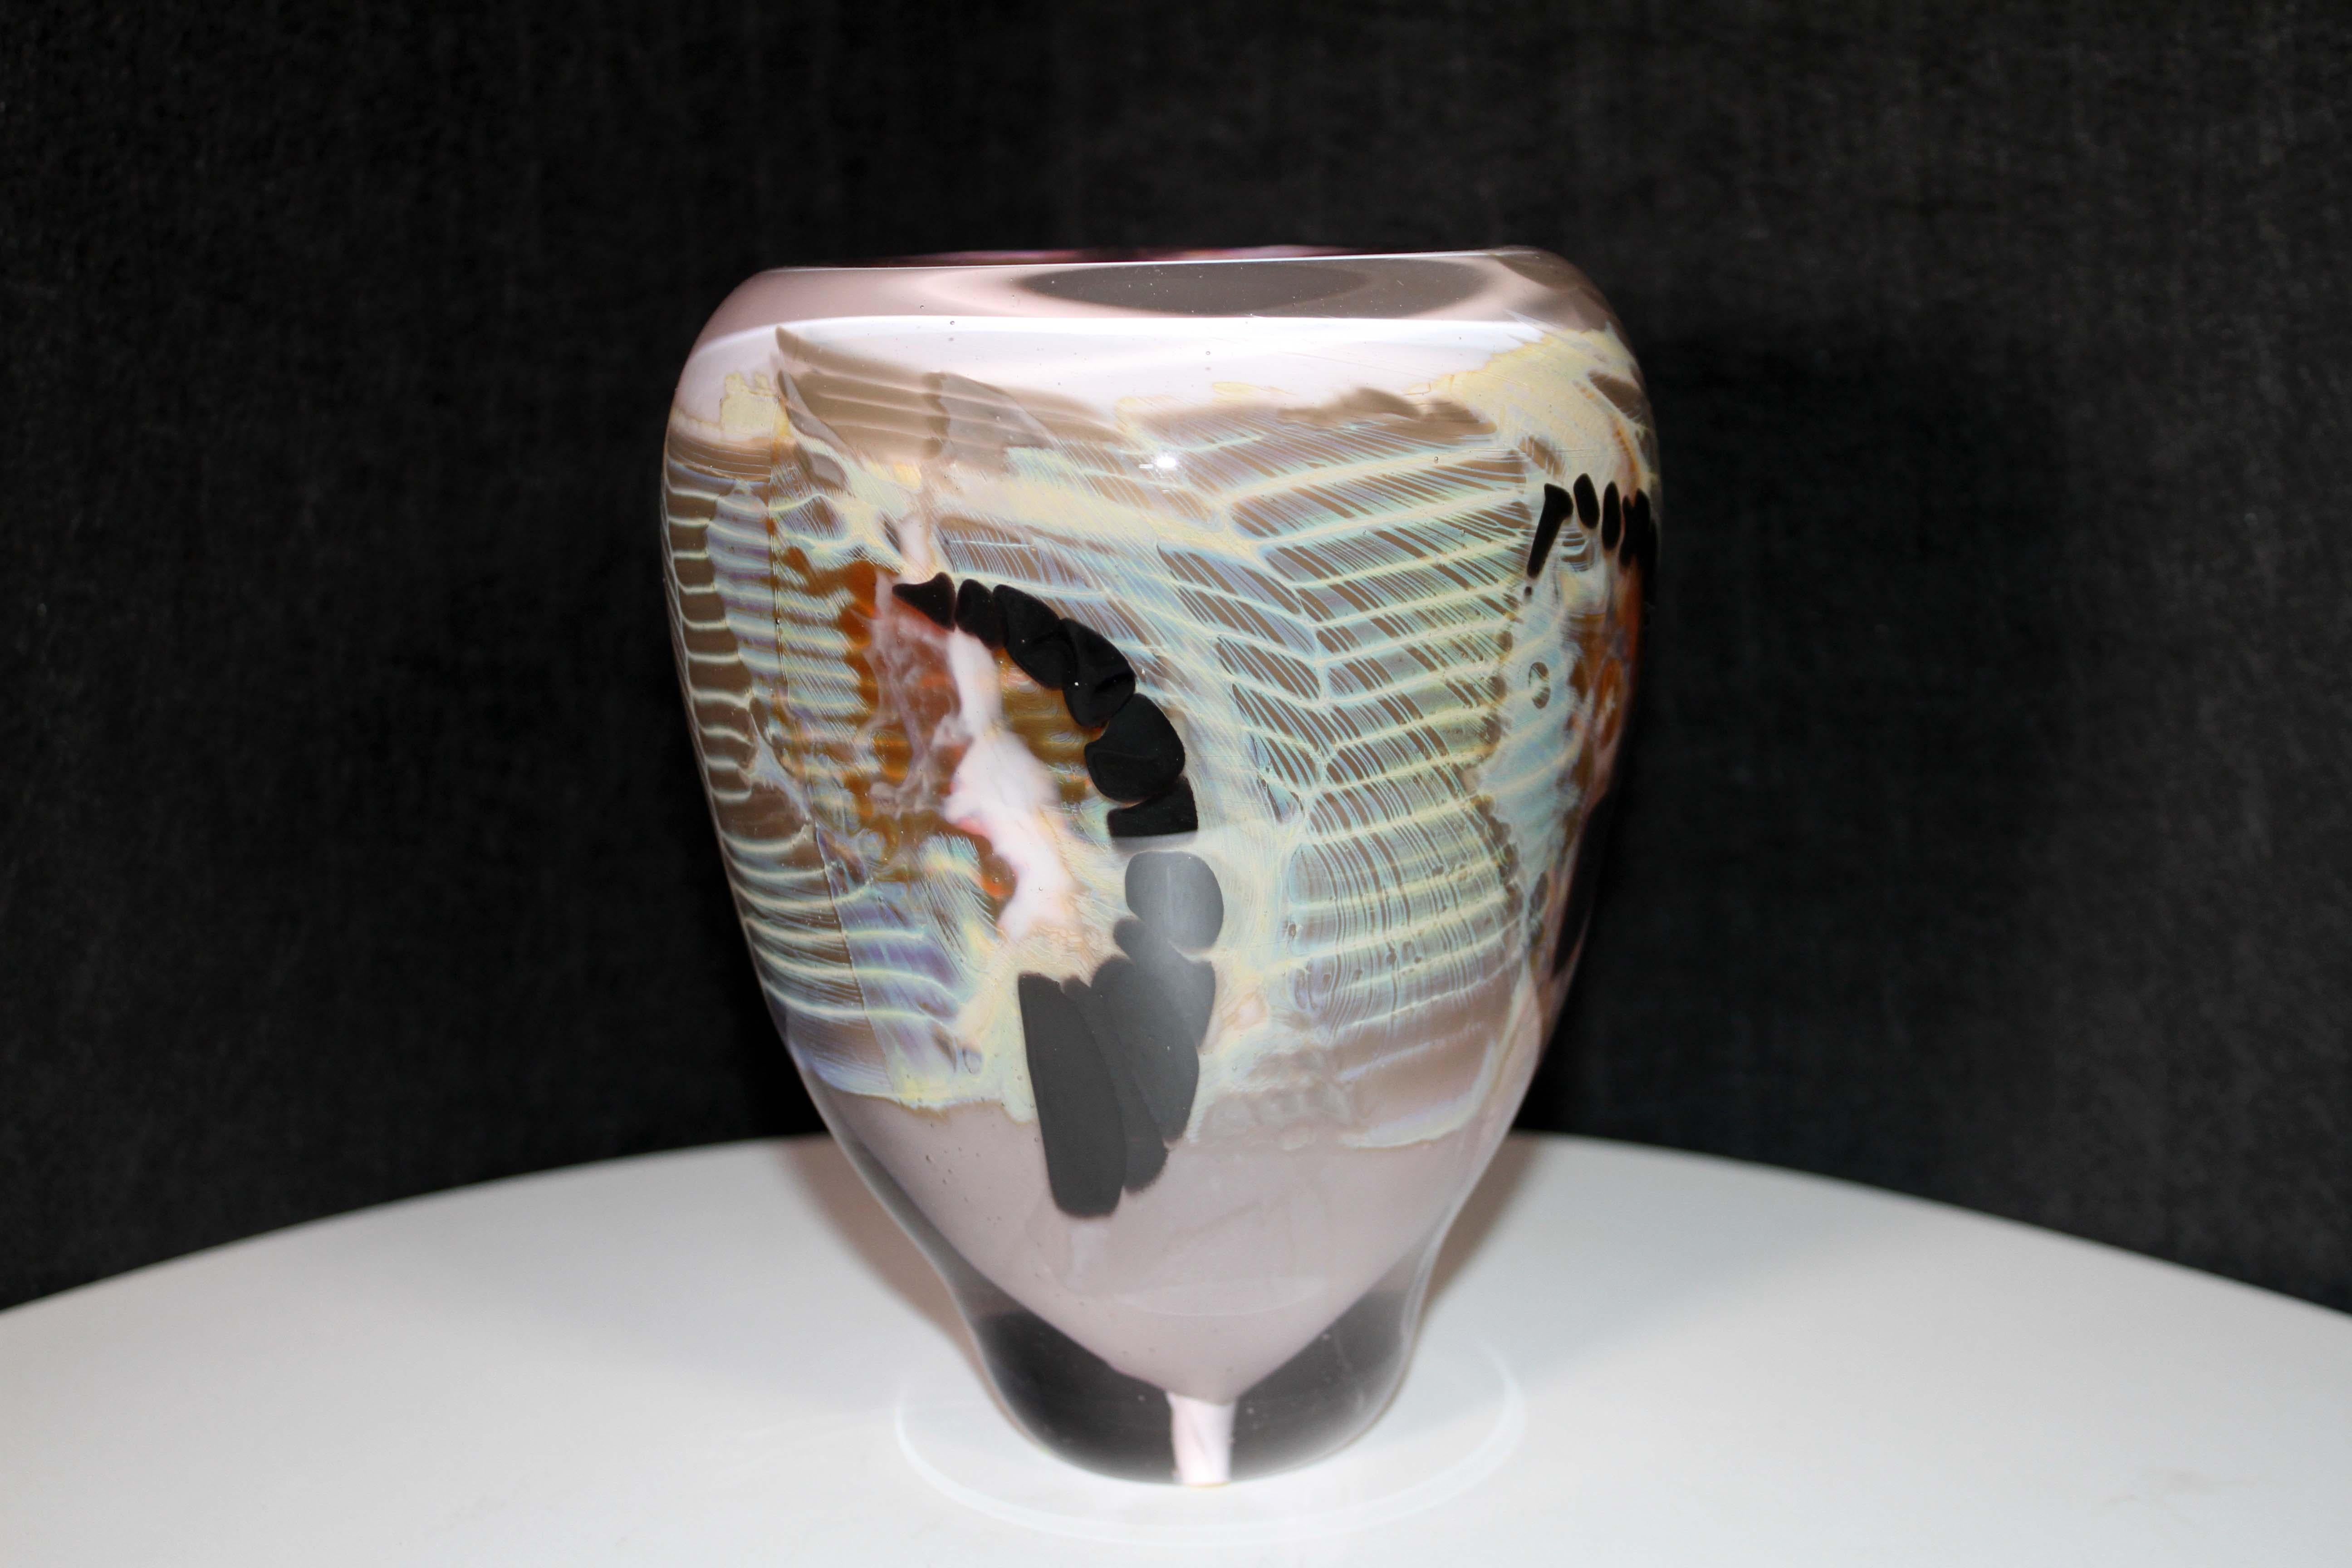 Un bel ensemble de verres d'art soufflés à la main par l'artiste du Michigan Sally Rogers. Cet ensemble comprend un vase et un ensemble de 3 sculptures. Des tons de rouge terreux et de mauve sont mélangés à des formes noires austères. Une